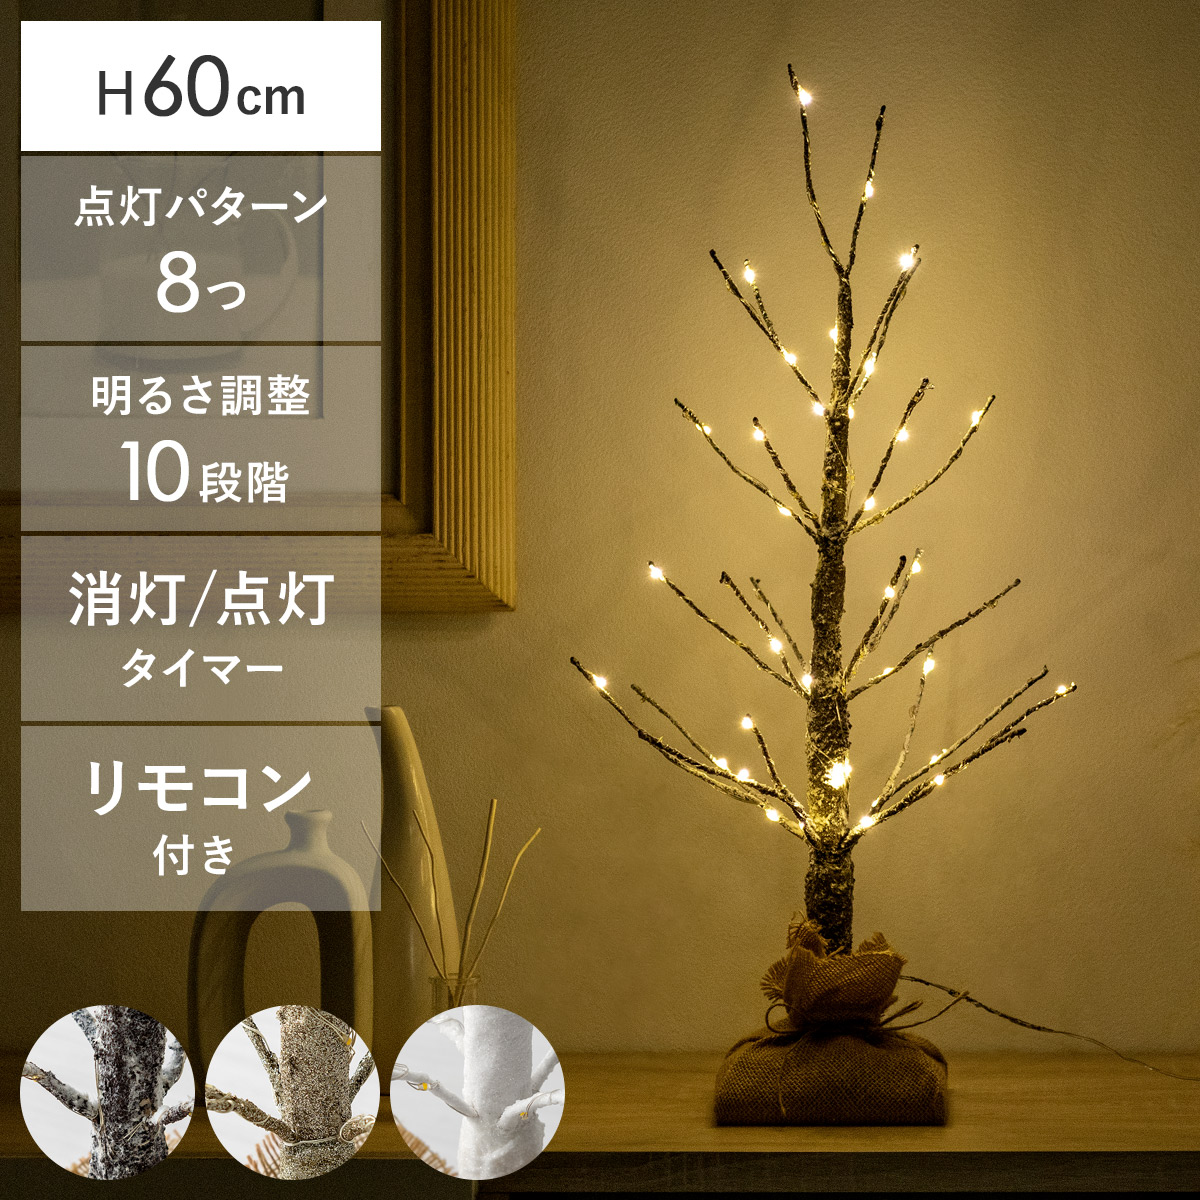 クリスマスLEDブランチツリー 60cmタイプ 【公式】 エア・リゾーム インテリア・家具通販